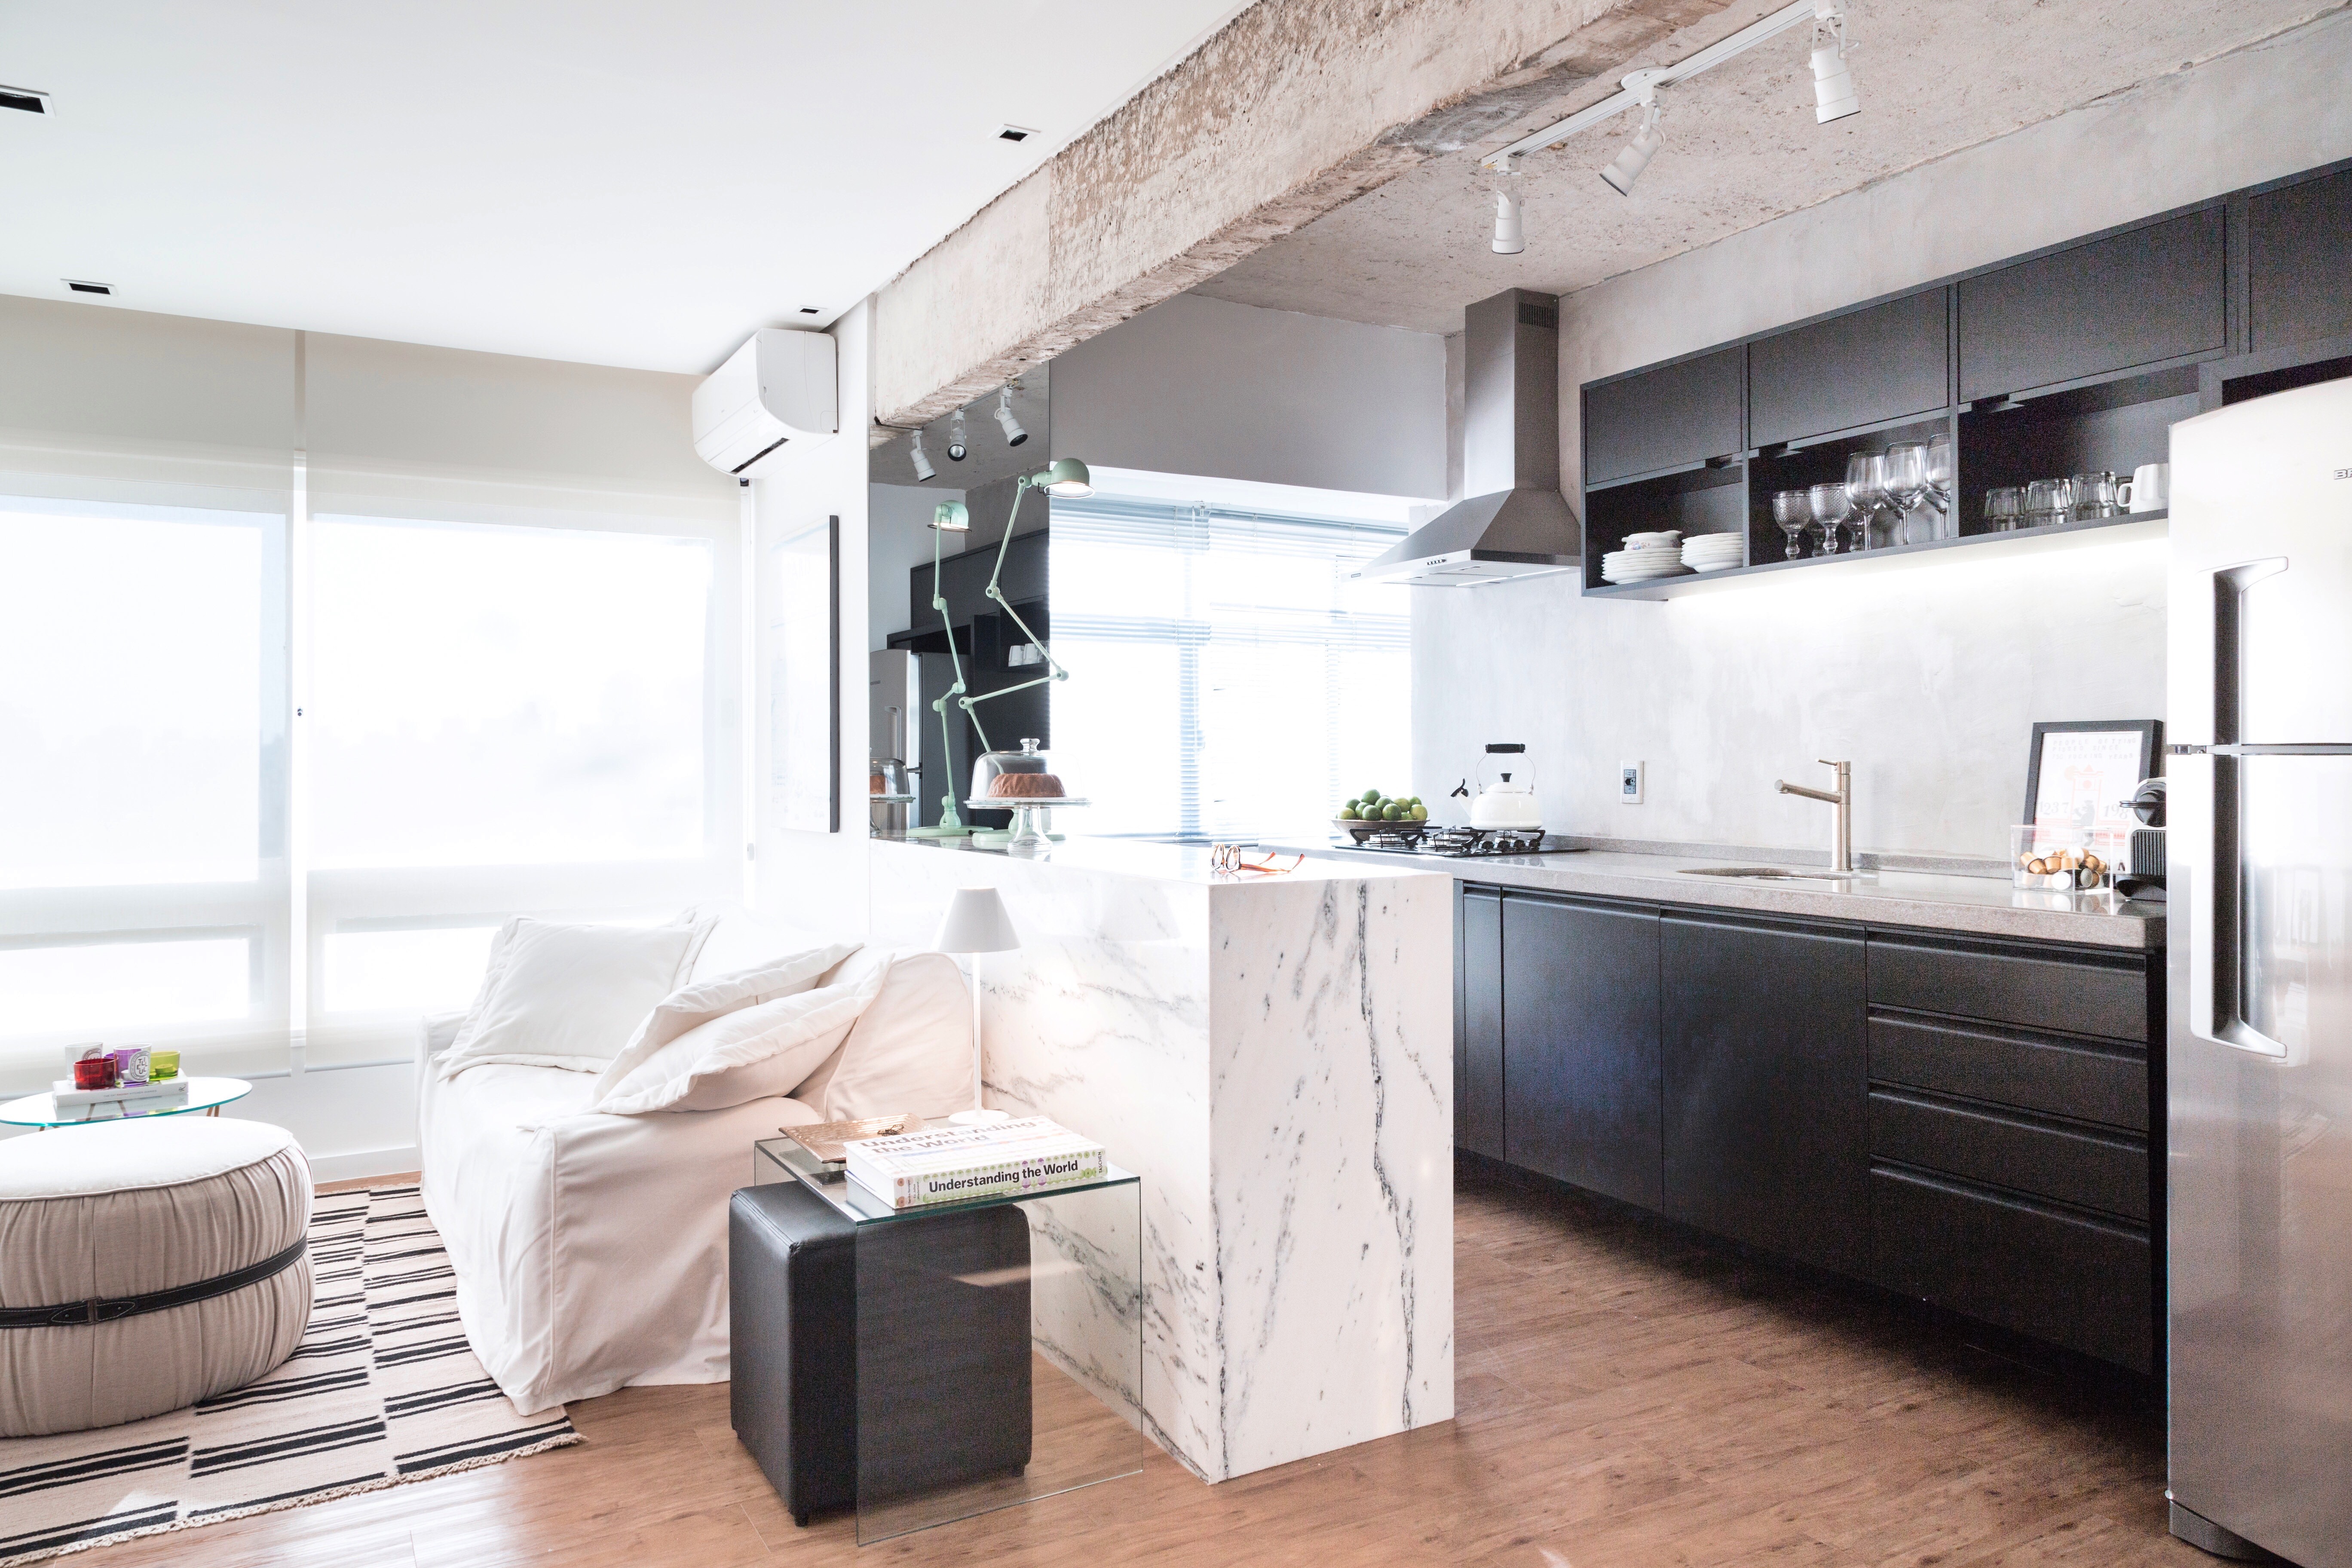 Cozinha integrada com bancada de mármore é destaque em apê de 60 m² (Foto: Marcelo Donadussi)